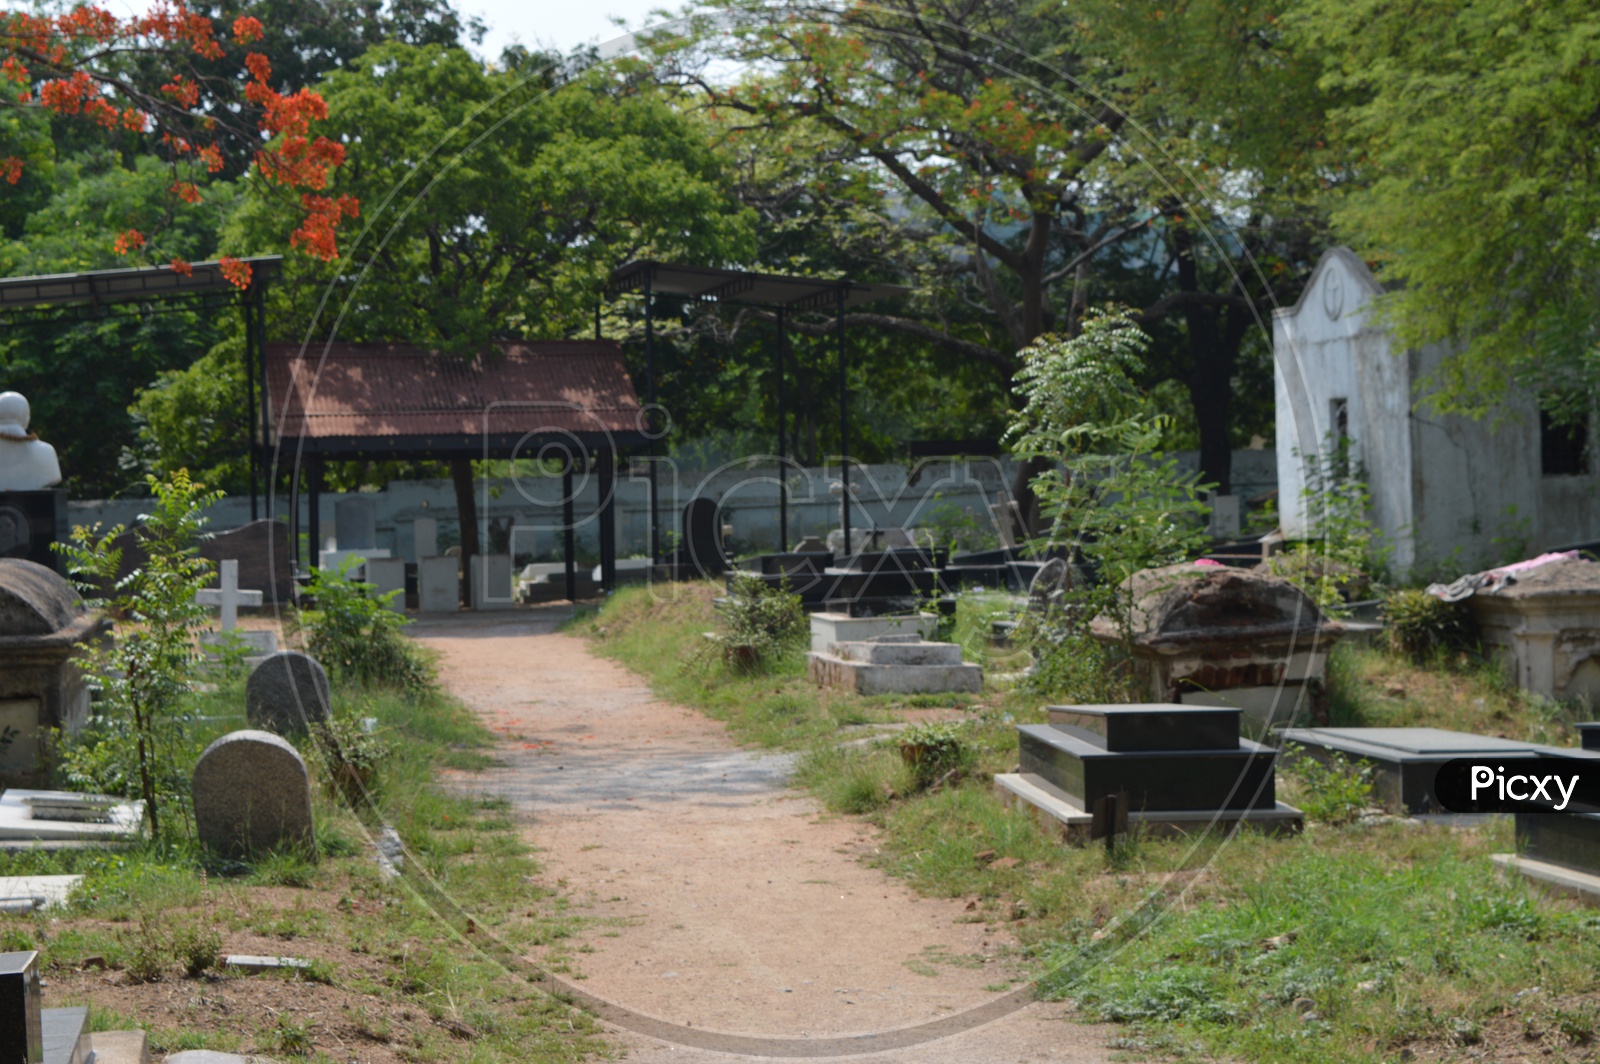 Crematorium  or Graveyard